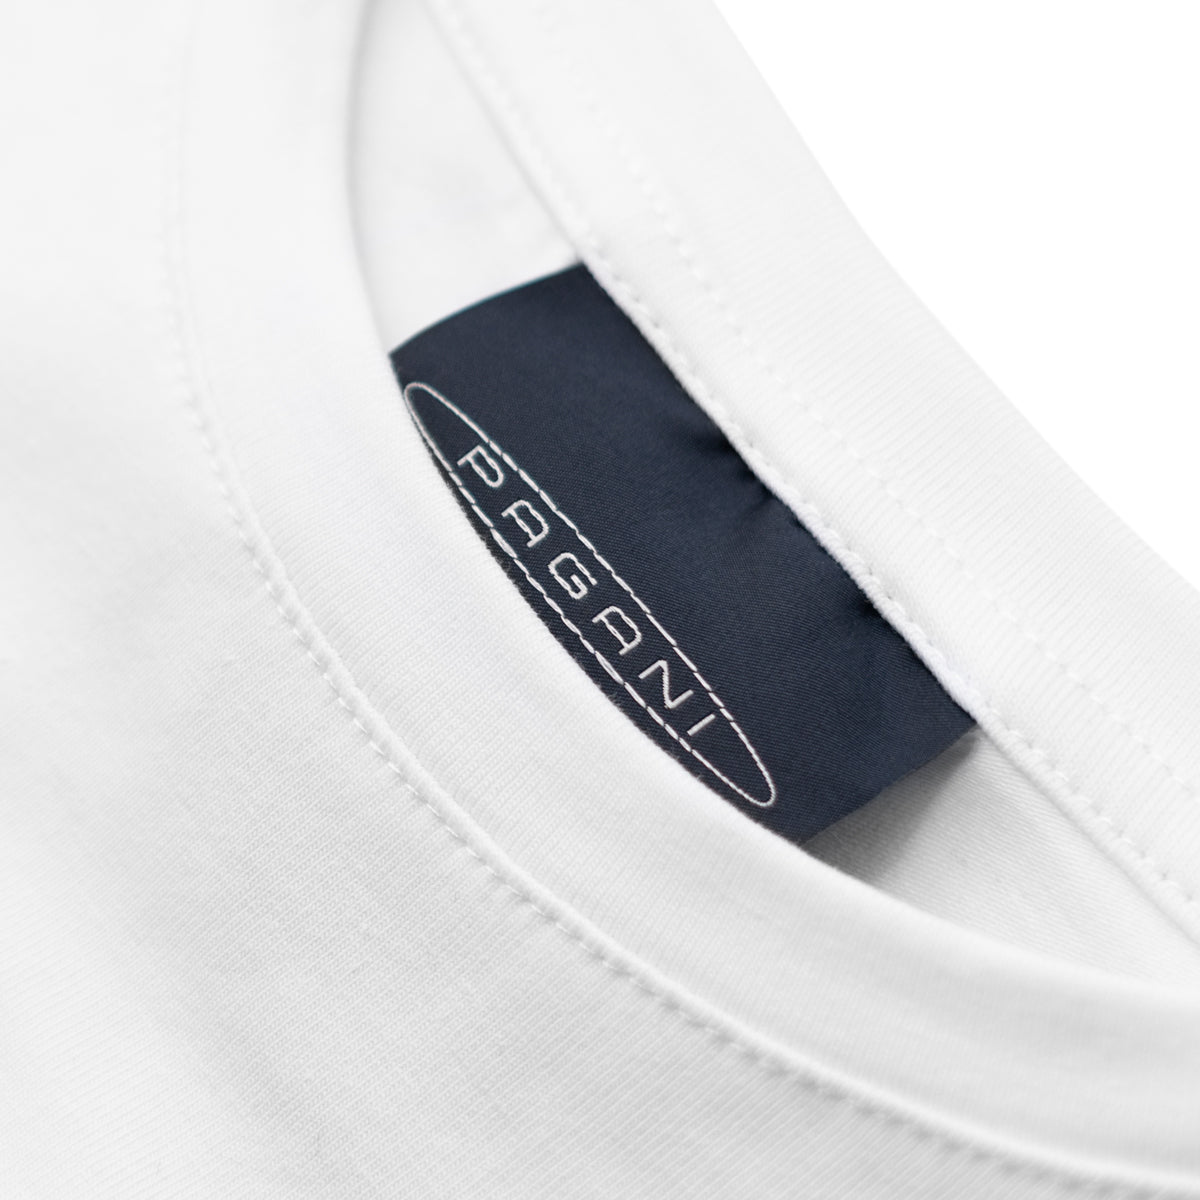 Herren-Basic-T-Shirt Weiß | Team Collection